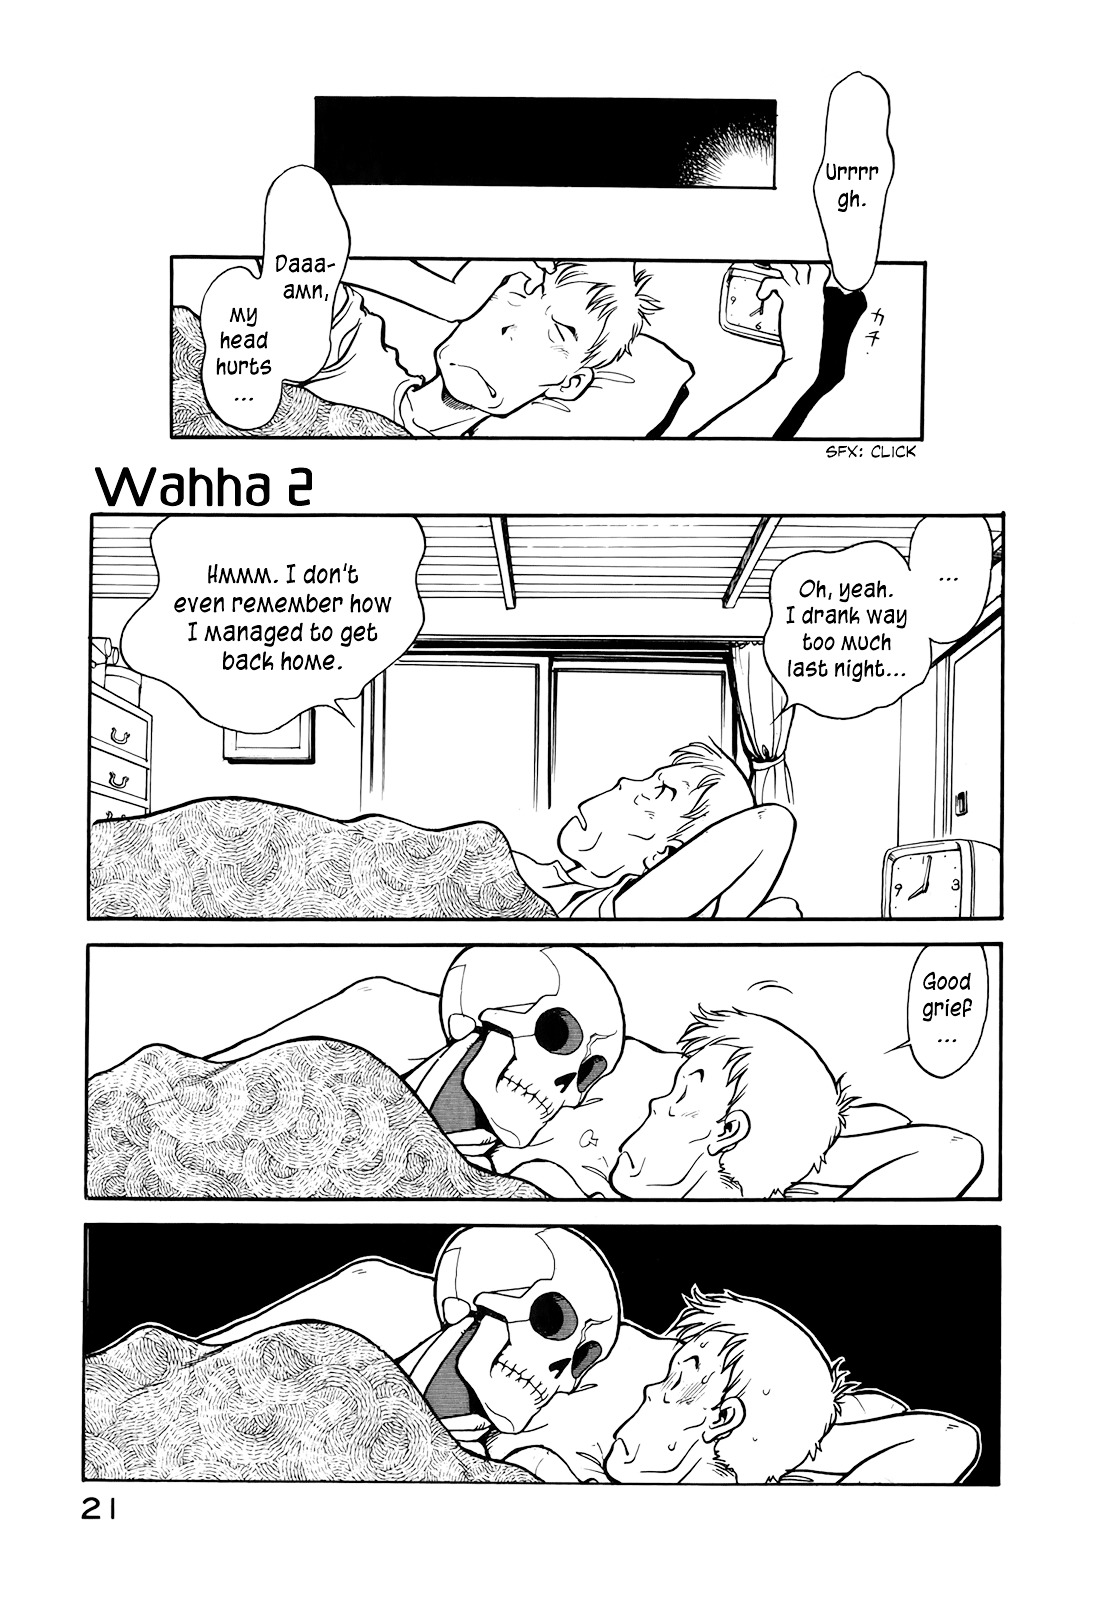 Wahhaman - Page 1